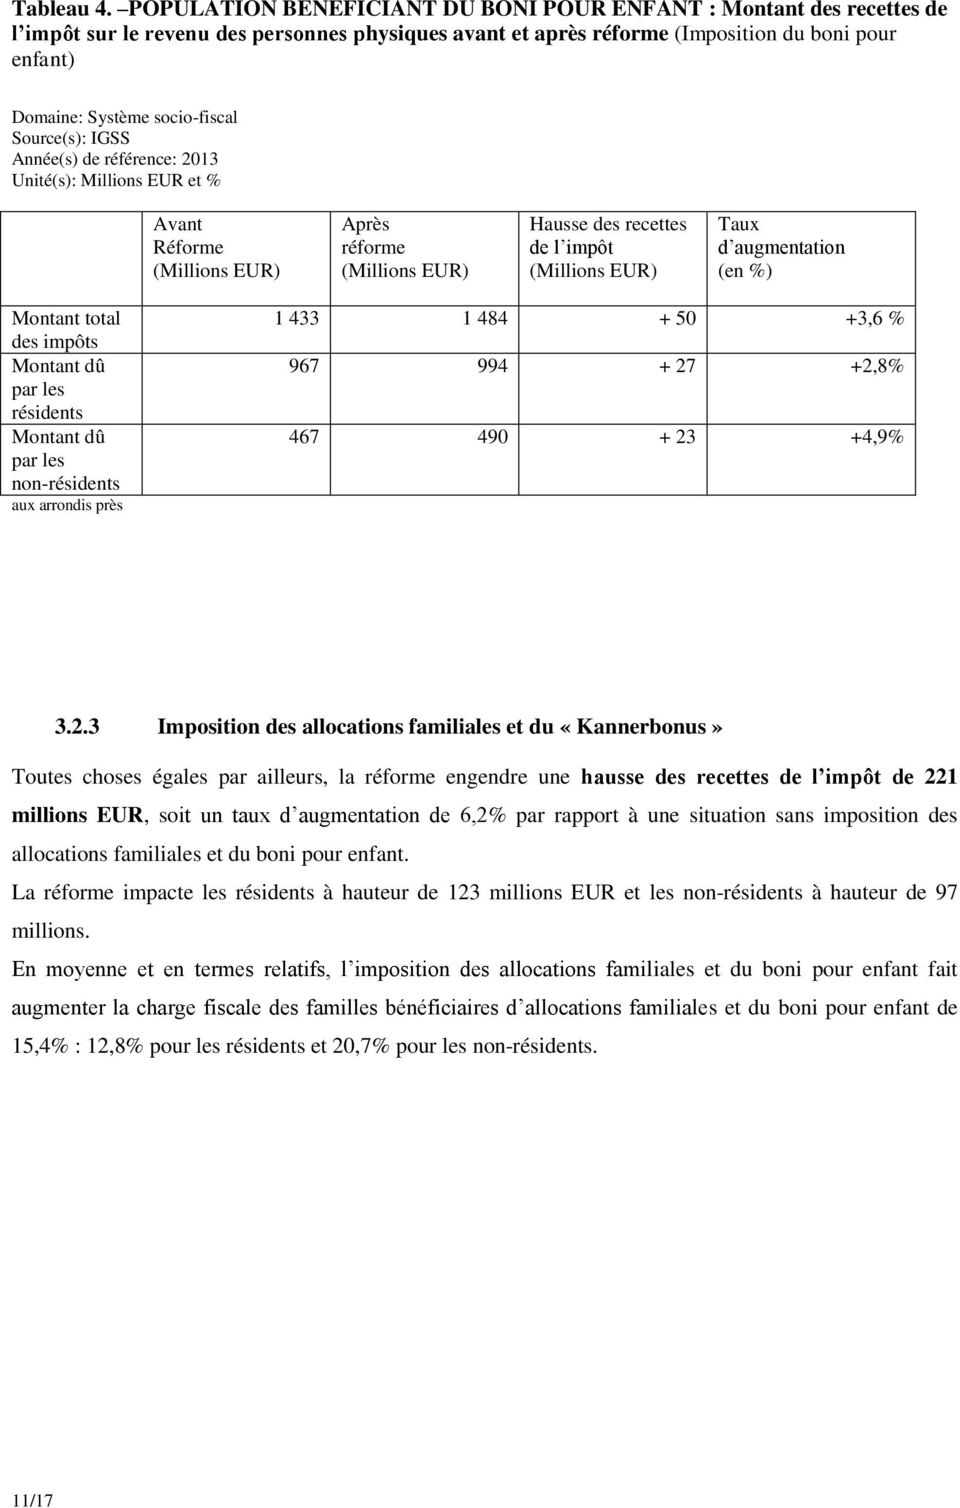 socio-fiscal Source(s): IGSS Année(s) de référence: 2013 Unité(s): Millions EUR et % Avant Réforme Après réforme Hausse des recettes de l impôt Taux d augmentation (en %) Montant total des impôts